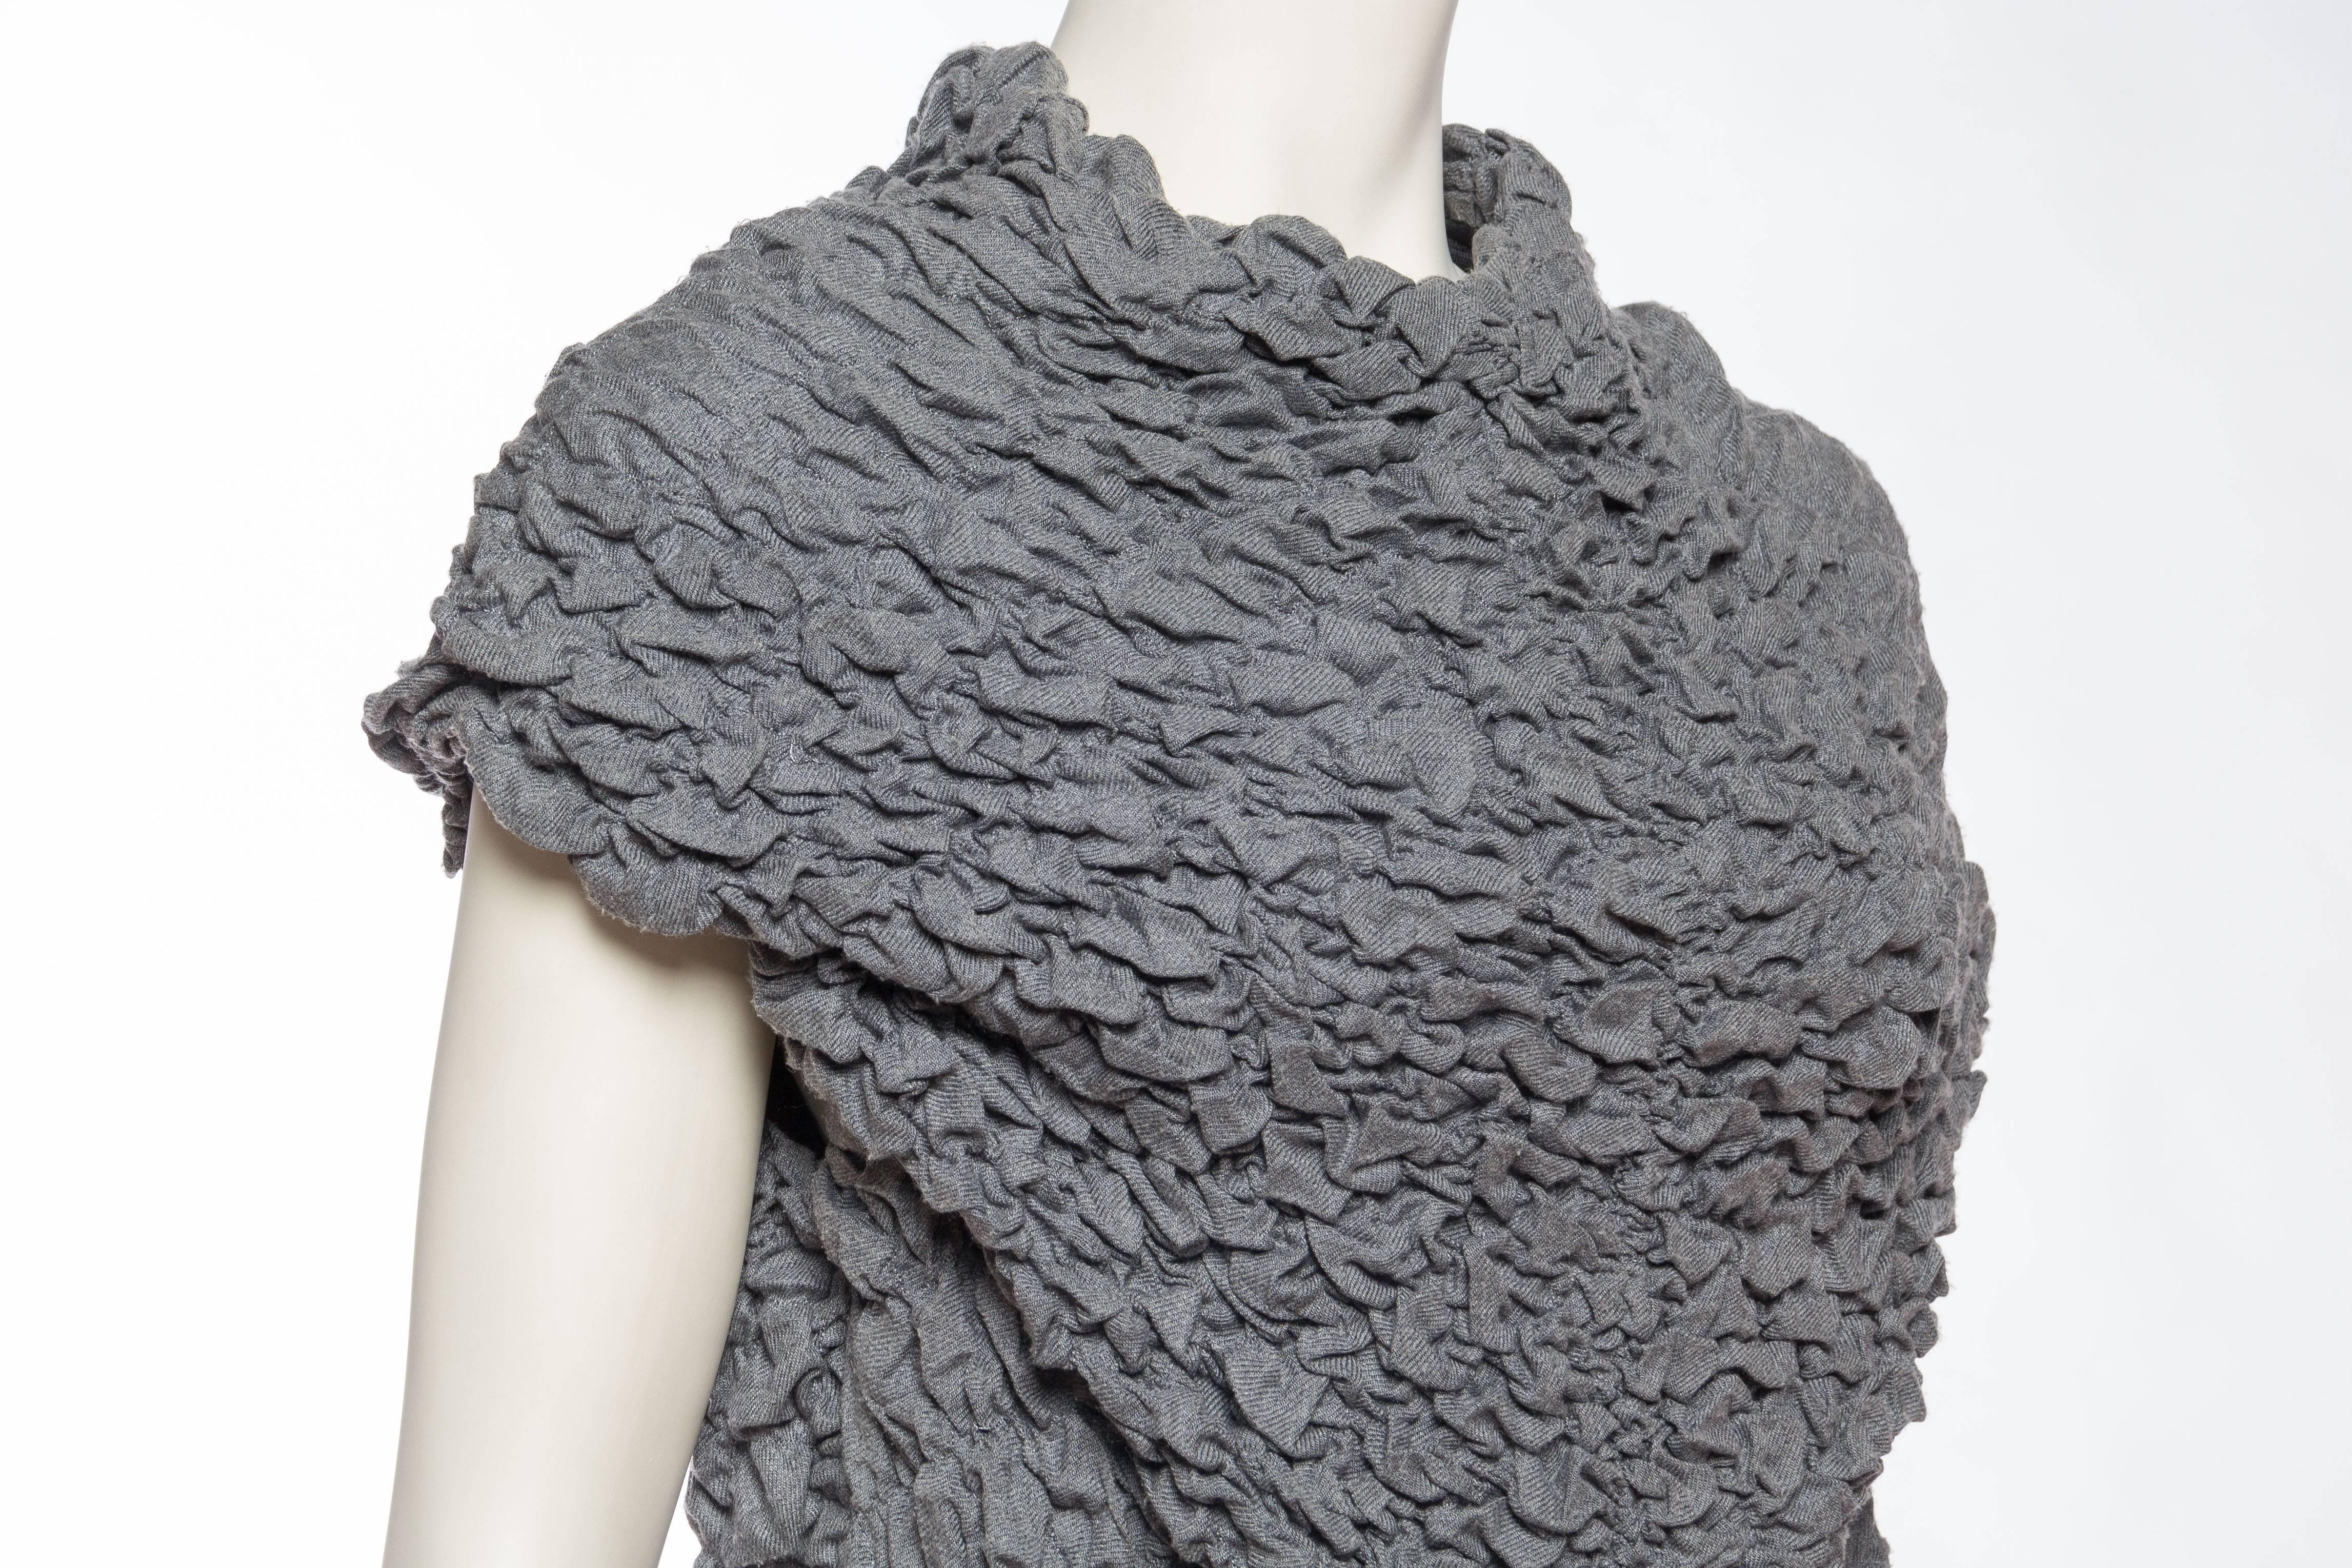 Women's 1990S ALEXANDER MCQUEEN Grey Textured Knit Top From Fall 1999 